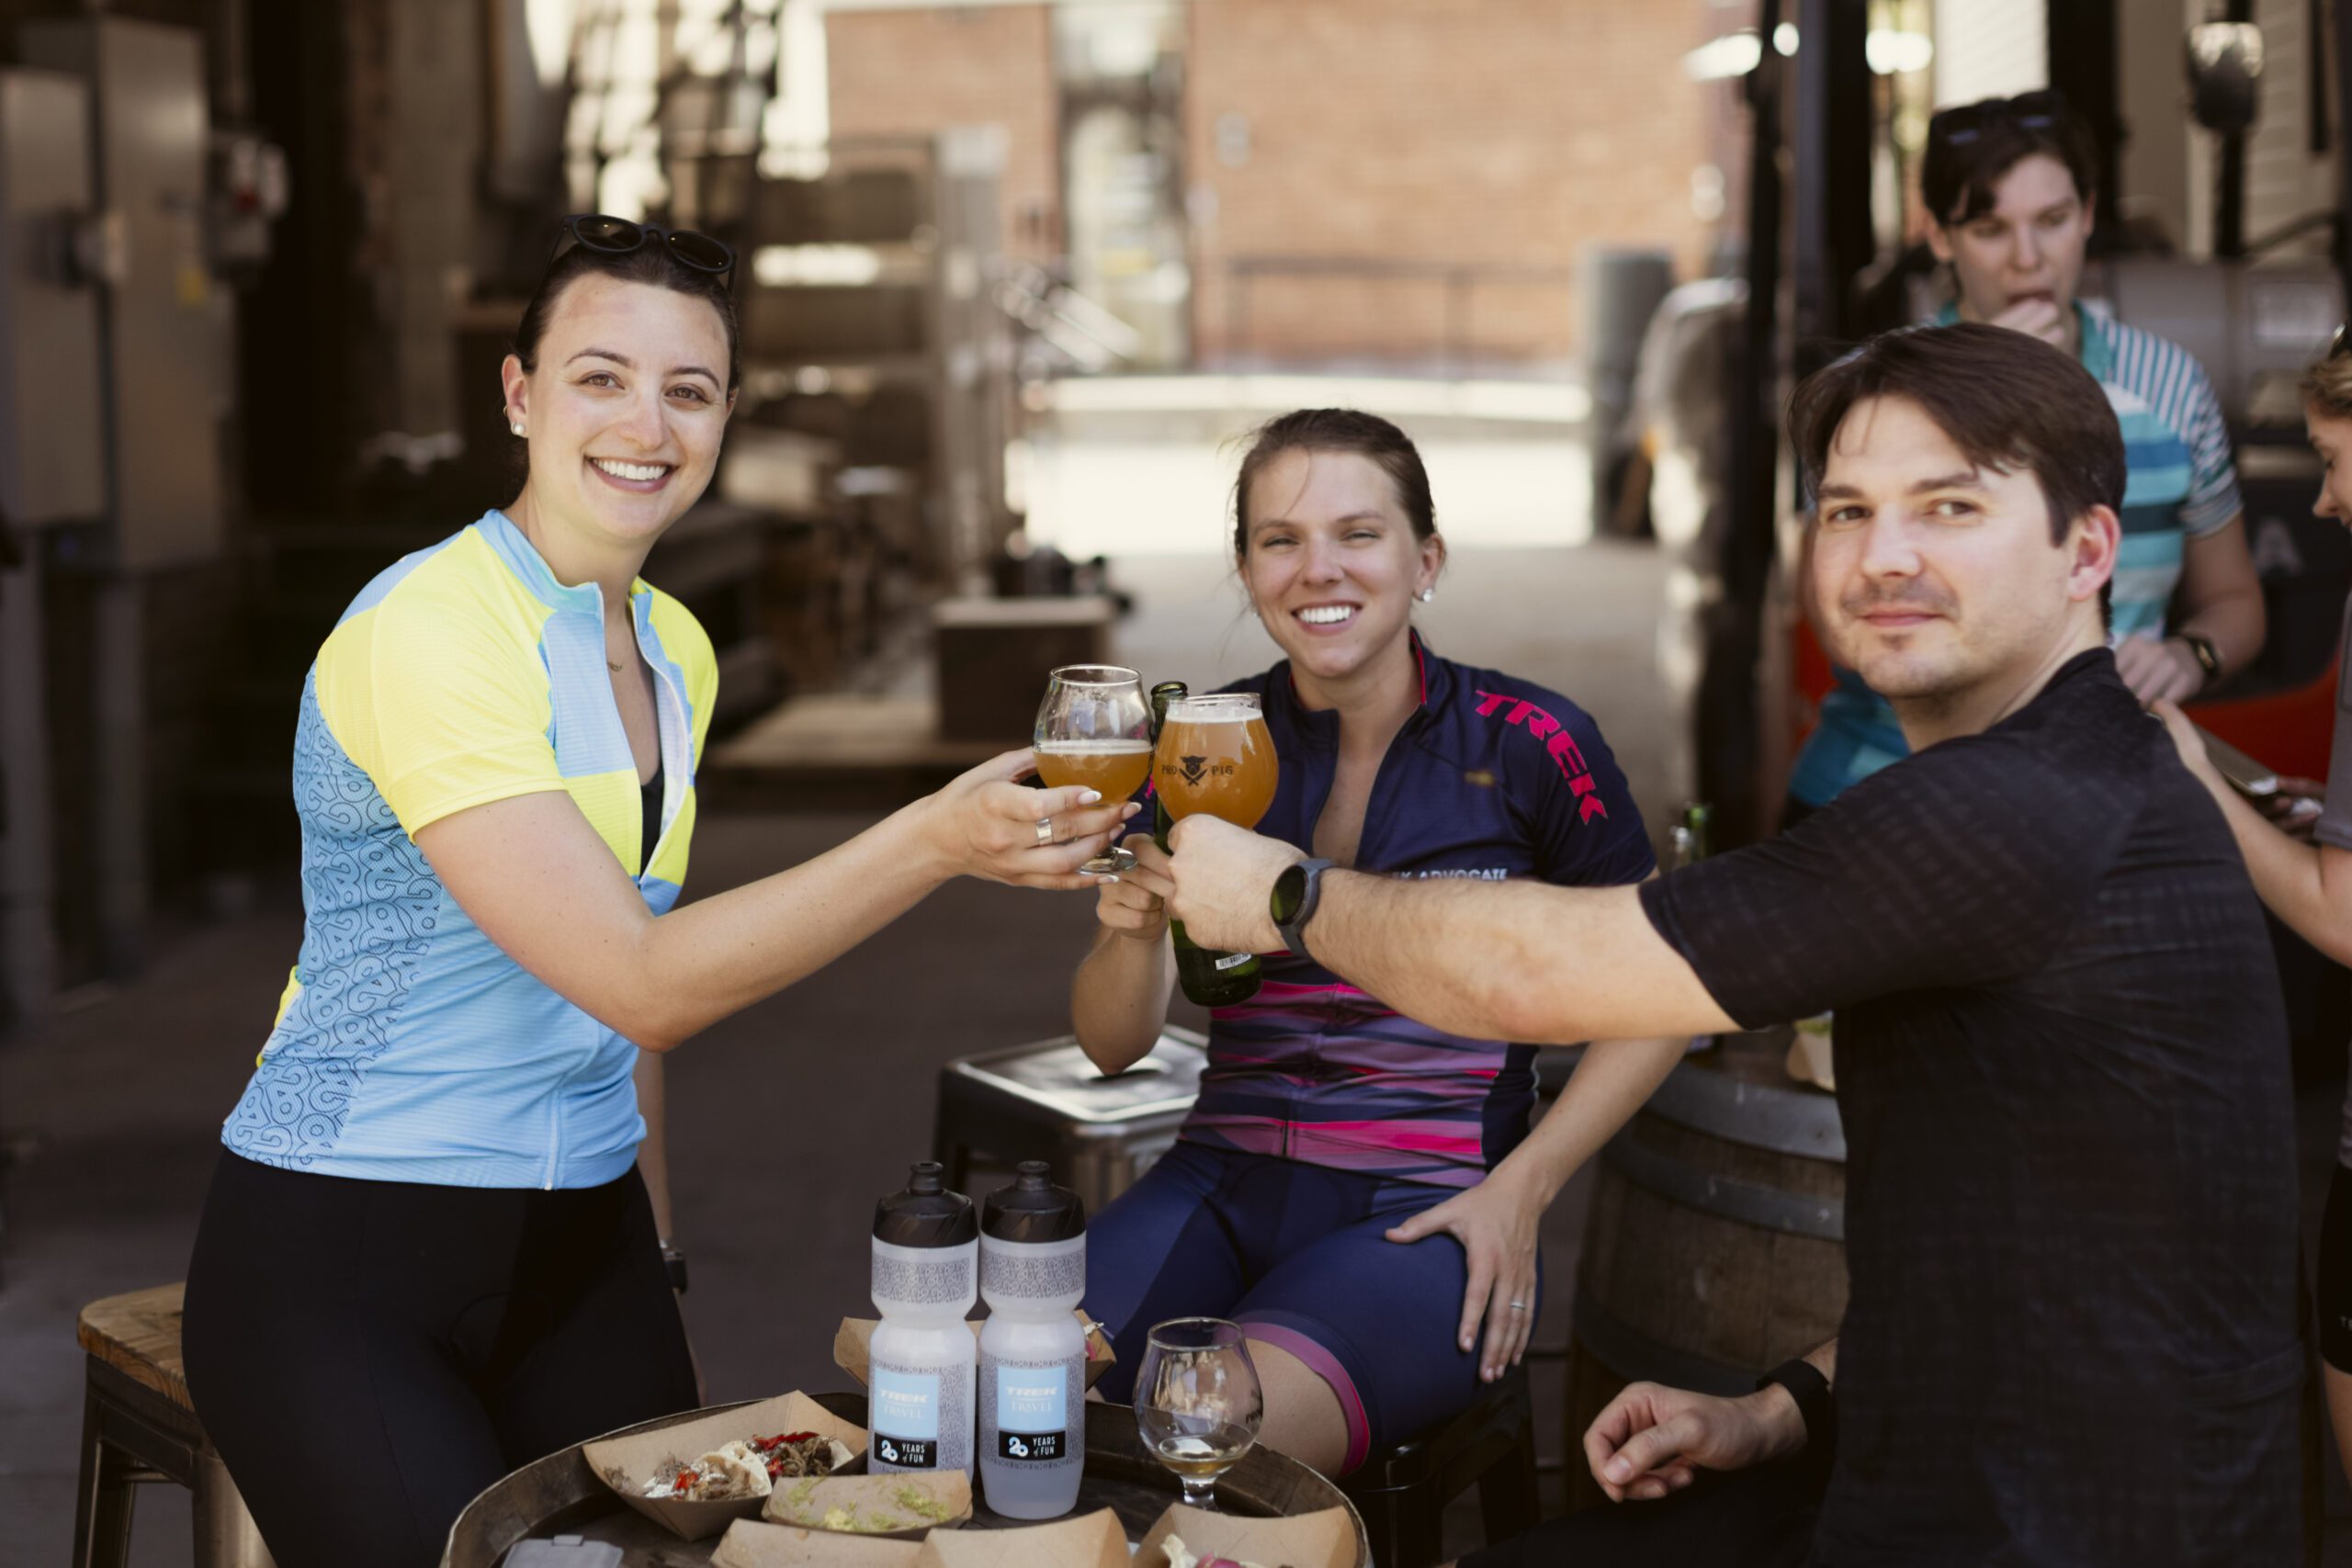 Group of three people enjoying beers.